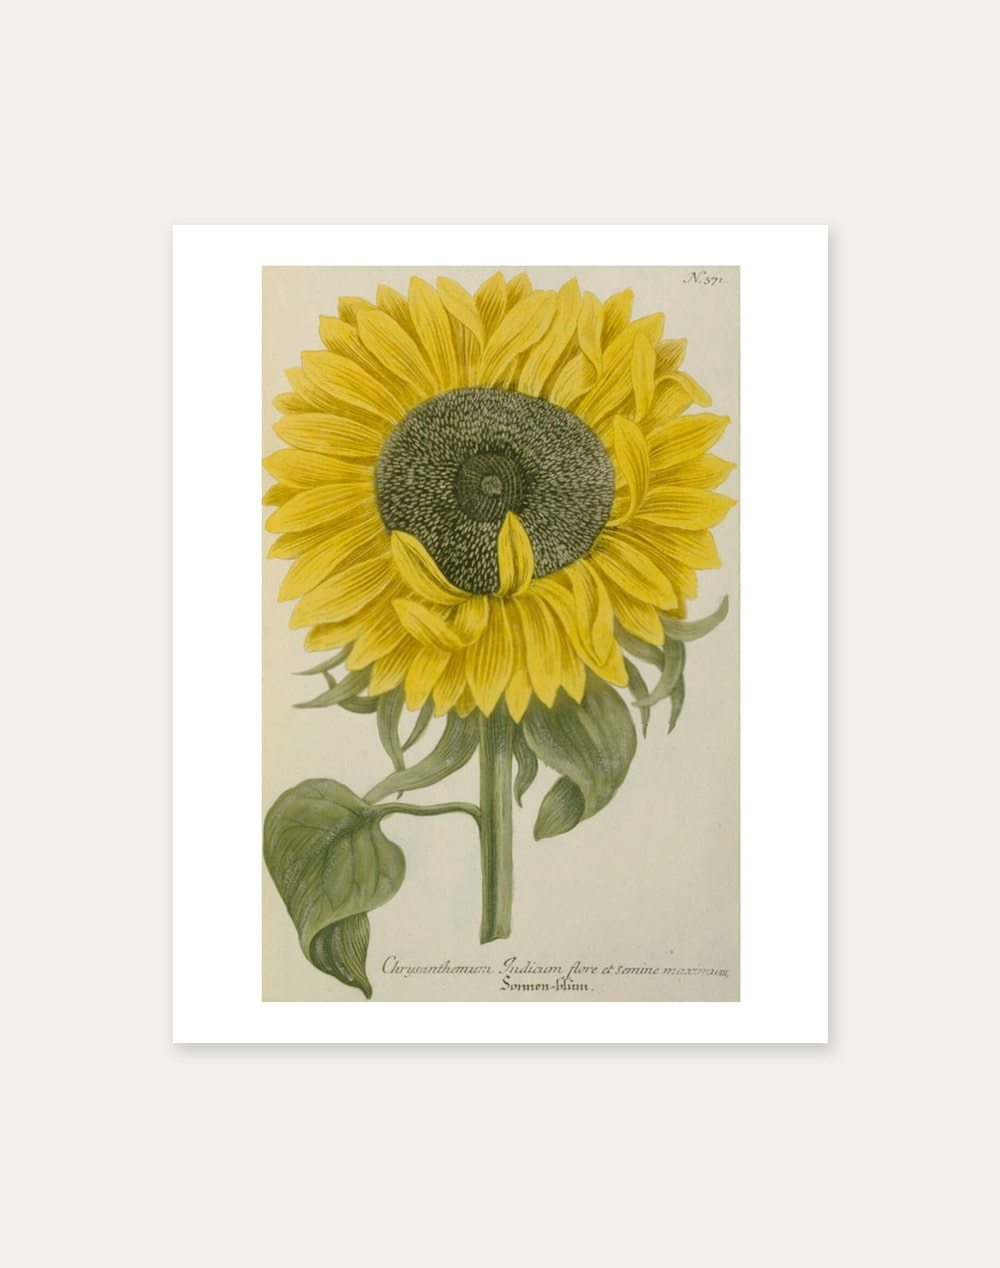 Johann Wilhem Weinmann ― Sunflowers51 x 40.5 cm 주문 후 2개월 소요